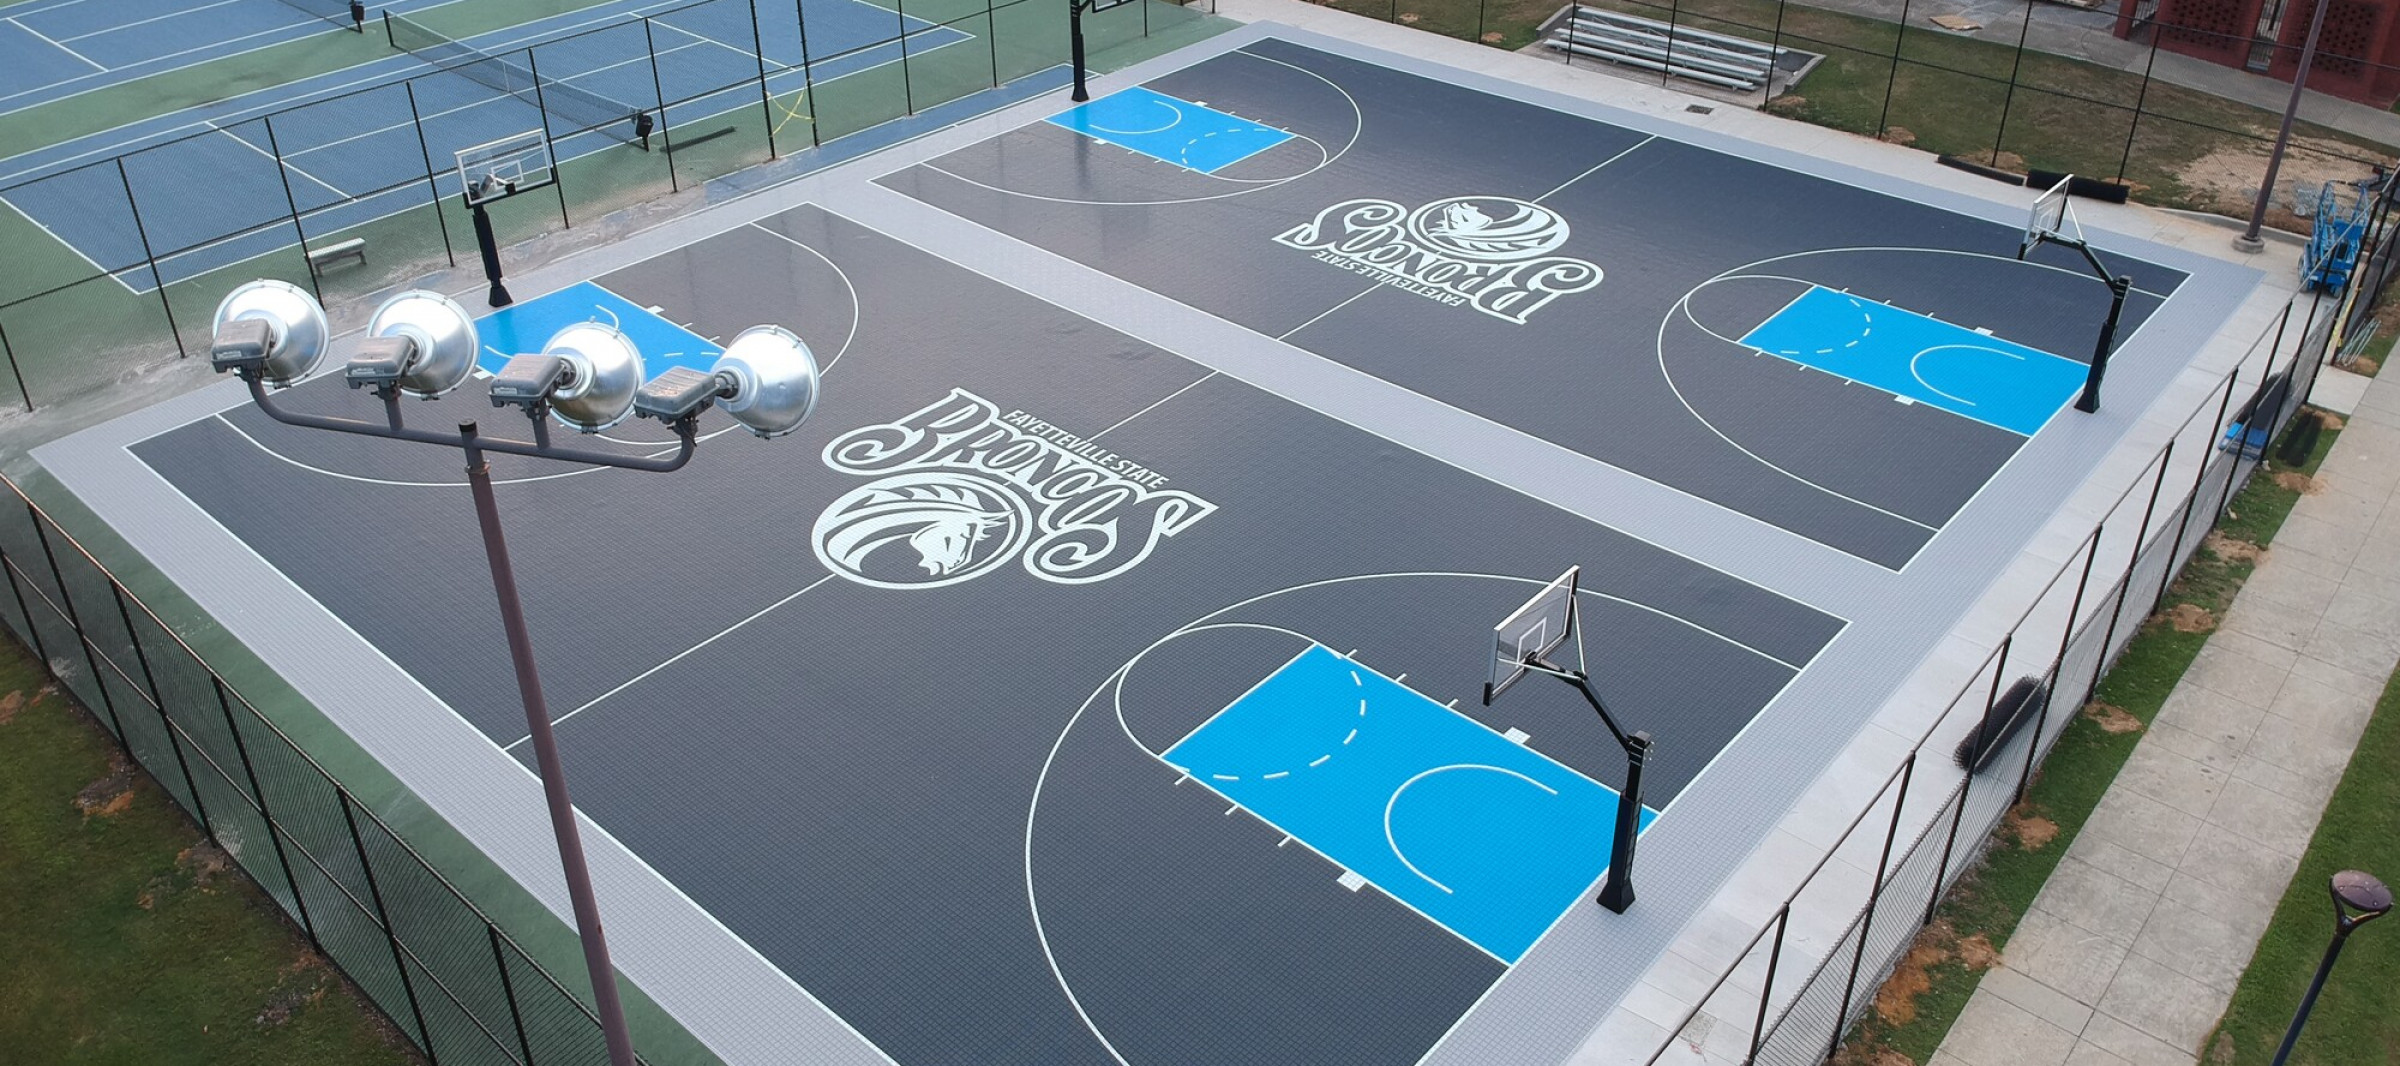 Backyard Basketball Court Flooring